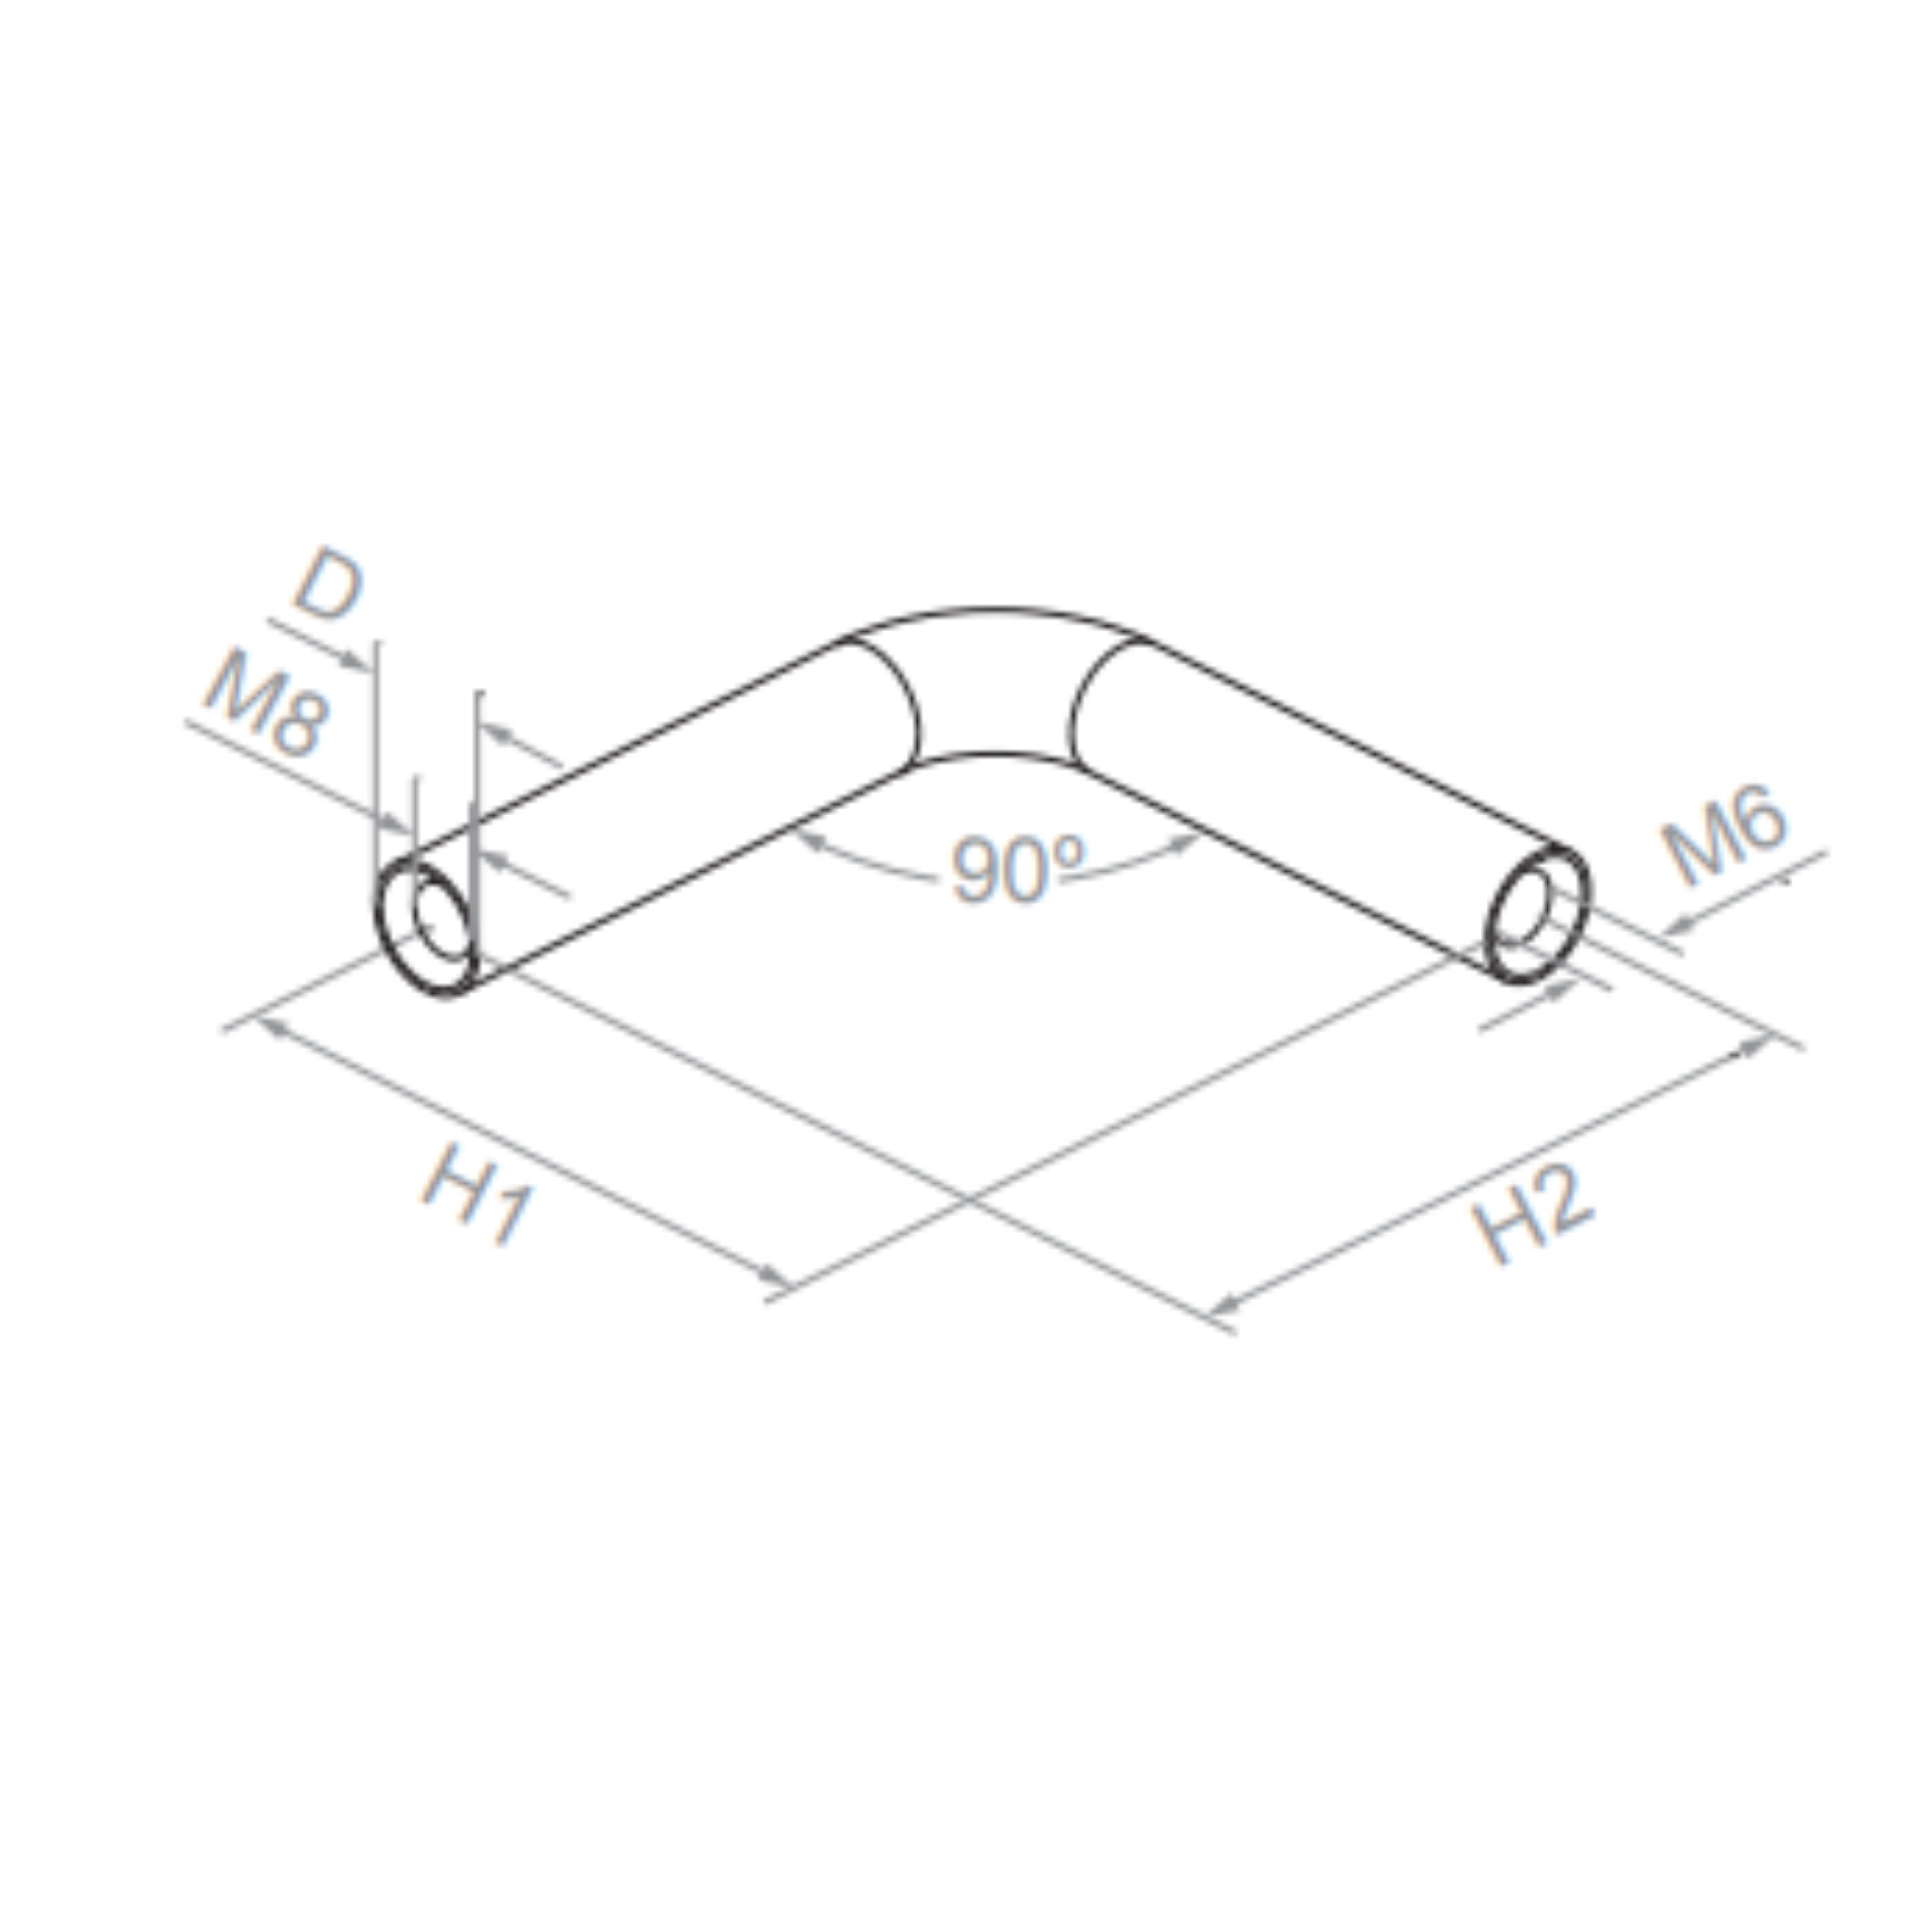 Handrail fitting (90º) - StroFIX